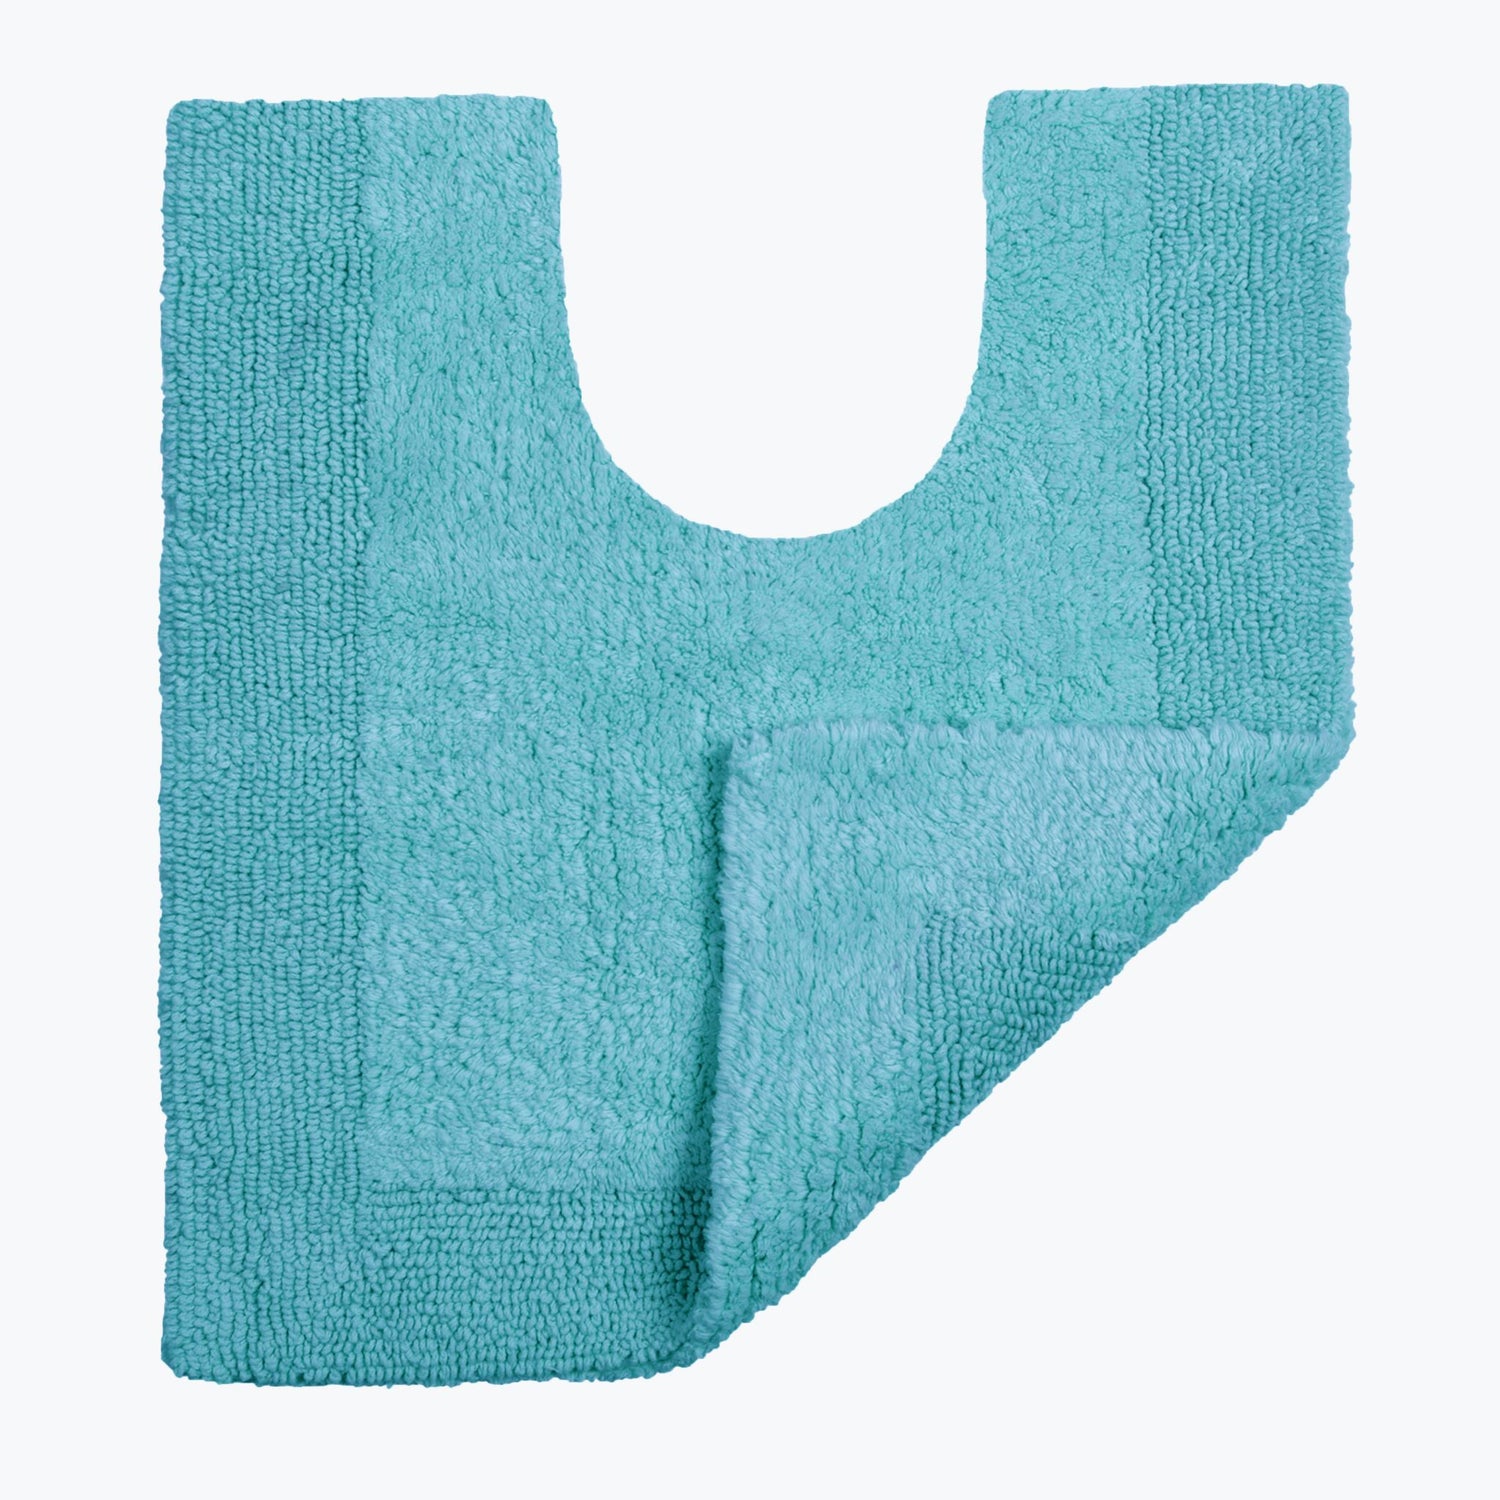 Turquoise Reversible Toilet Mat - Super Soft Cotton Pedestal Mat